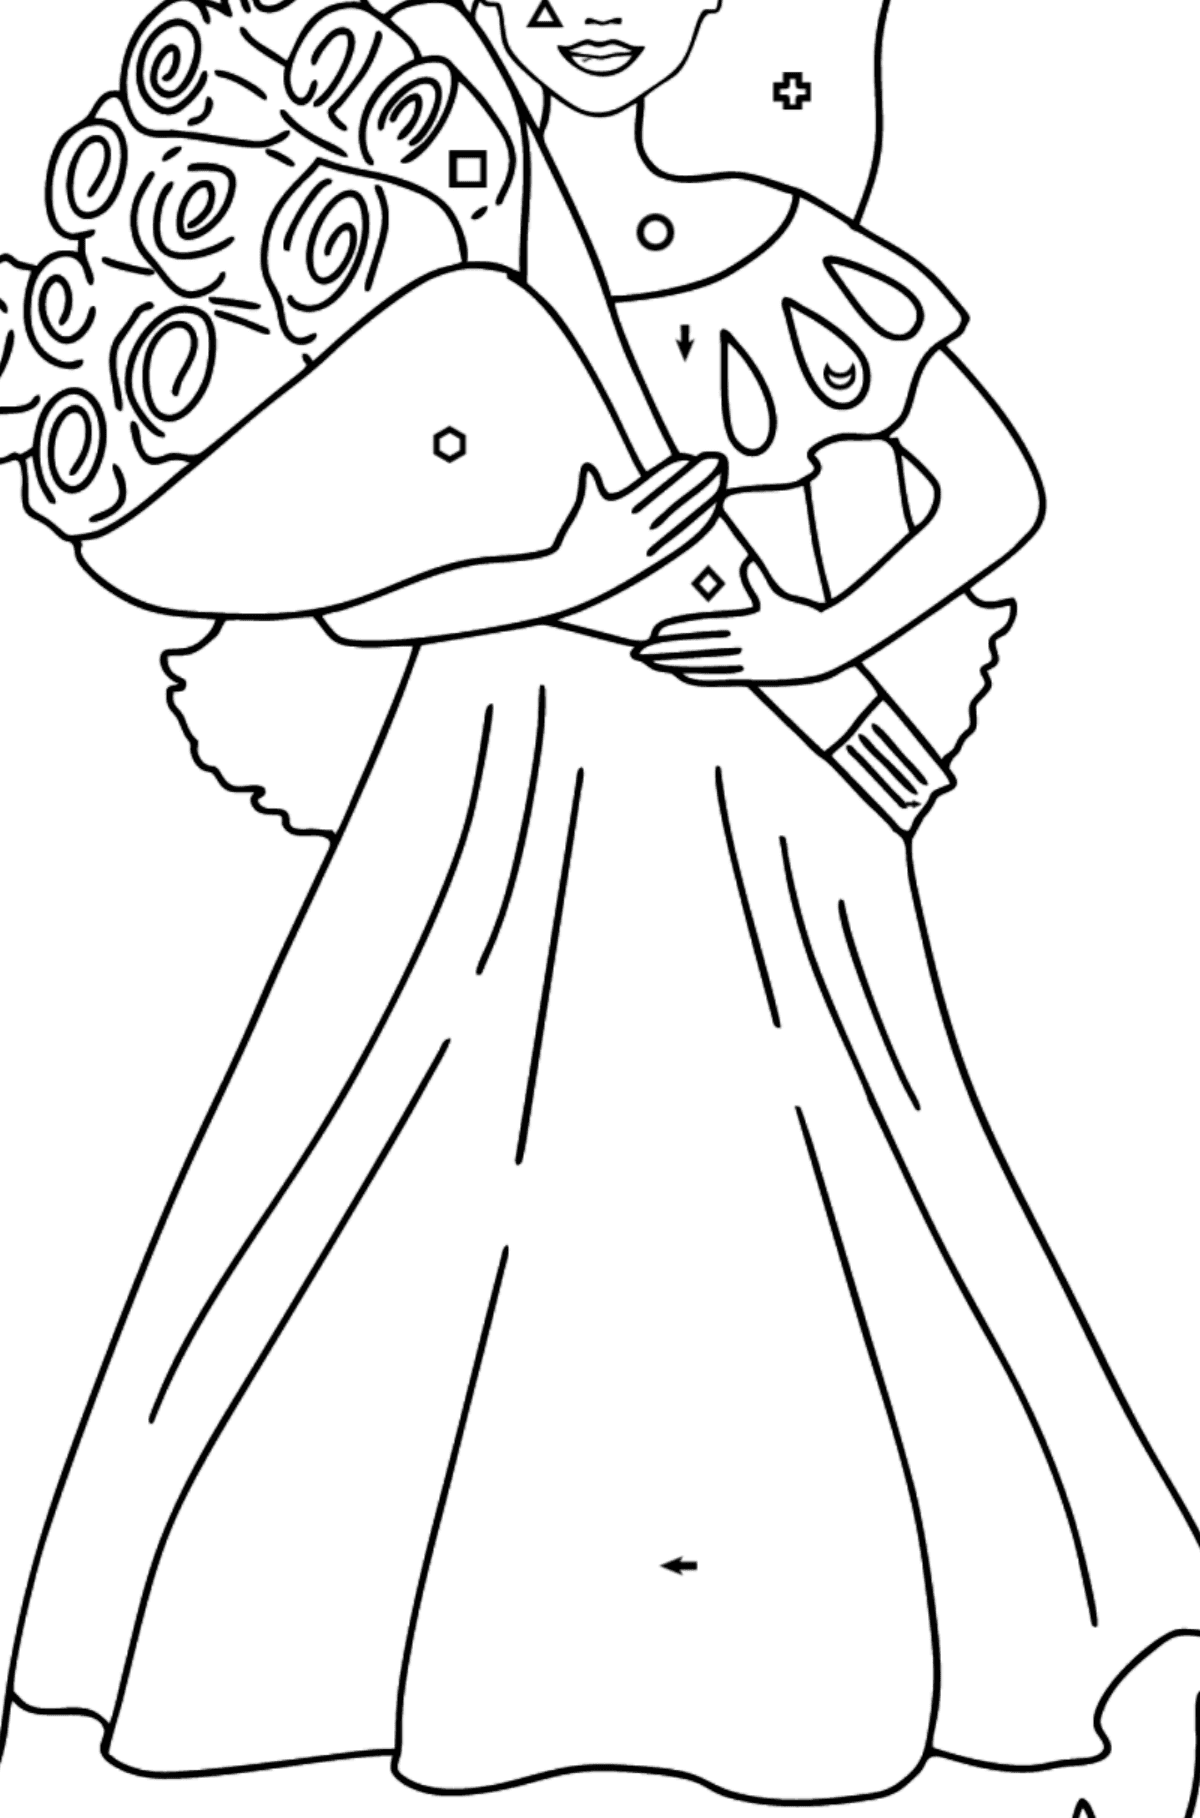 Розмальовка лялька Барбі для дівчаток - Розмальовка по Символам і Геометричним Фігурам для дітей